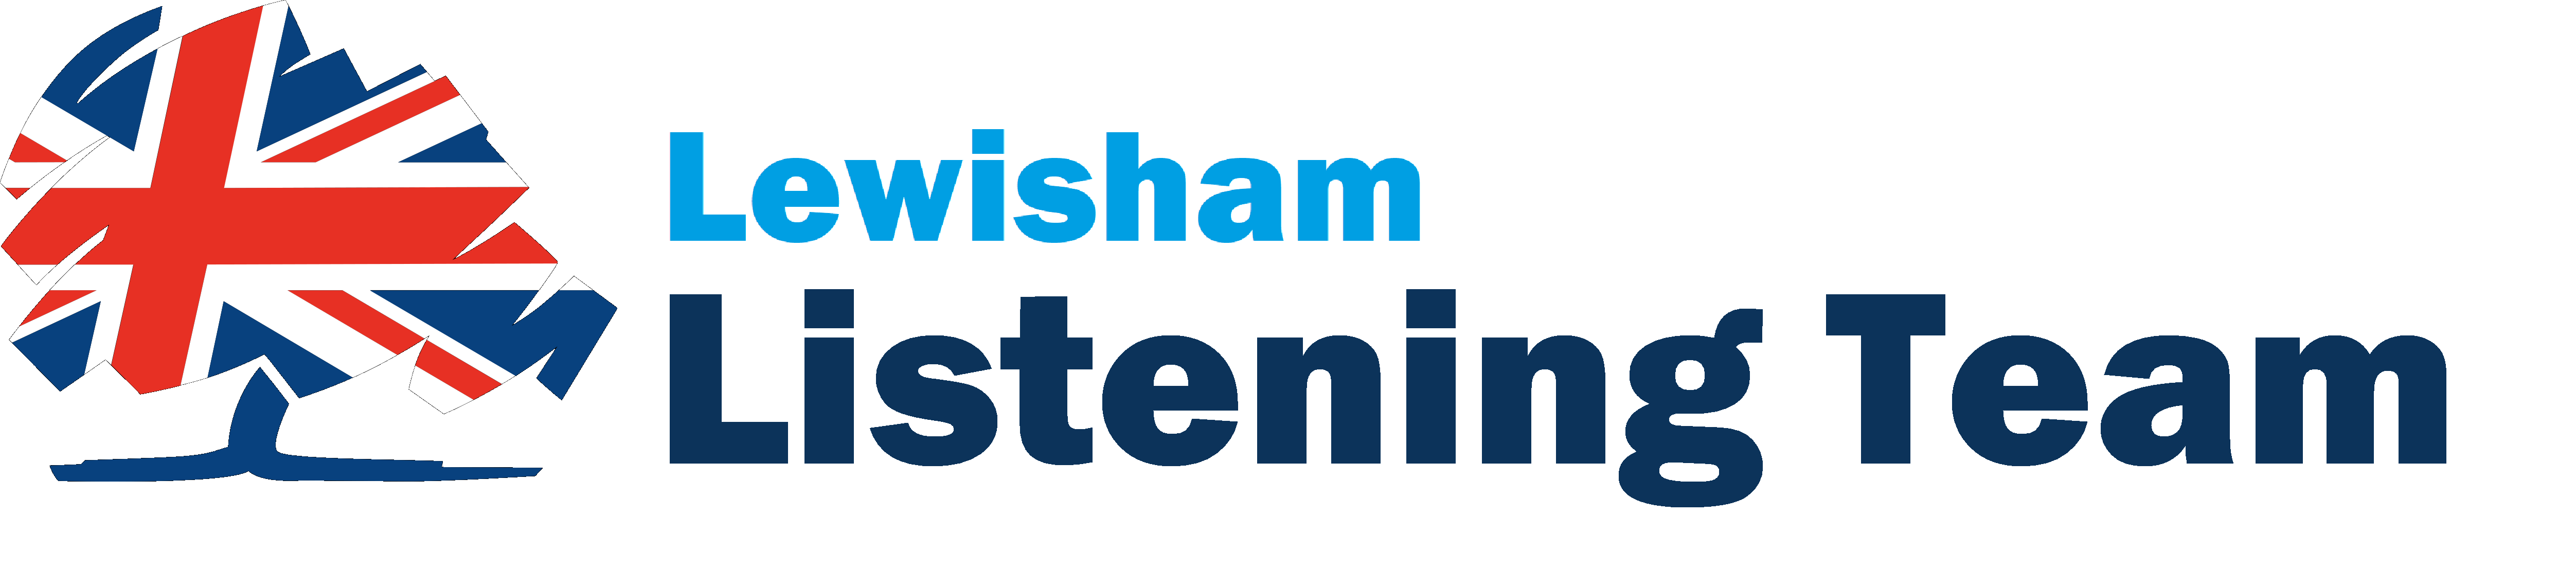 Lewisham Listening Team